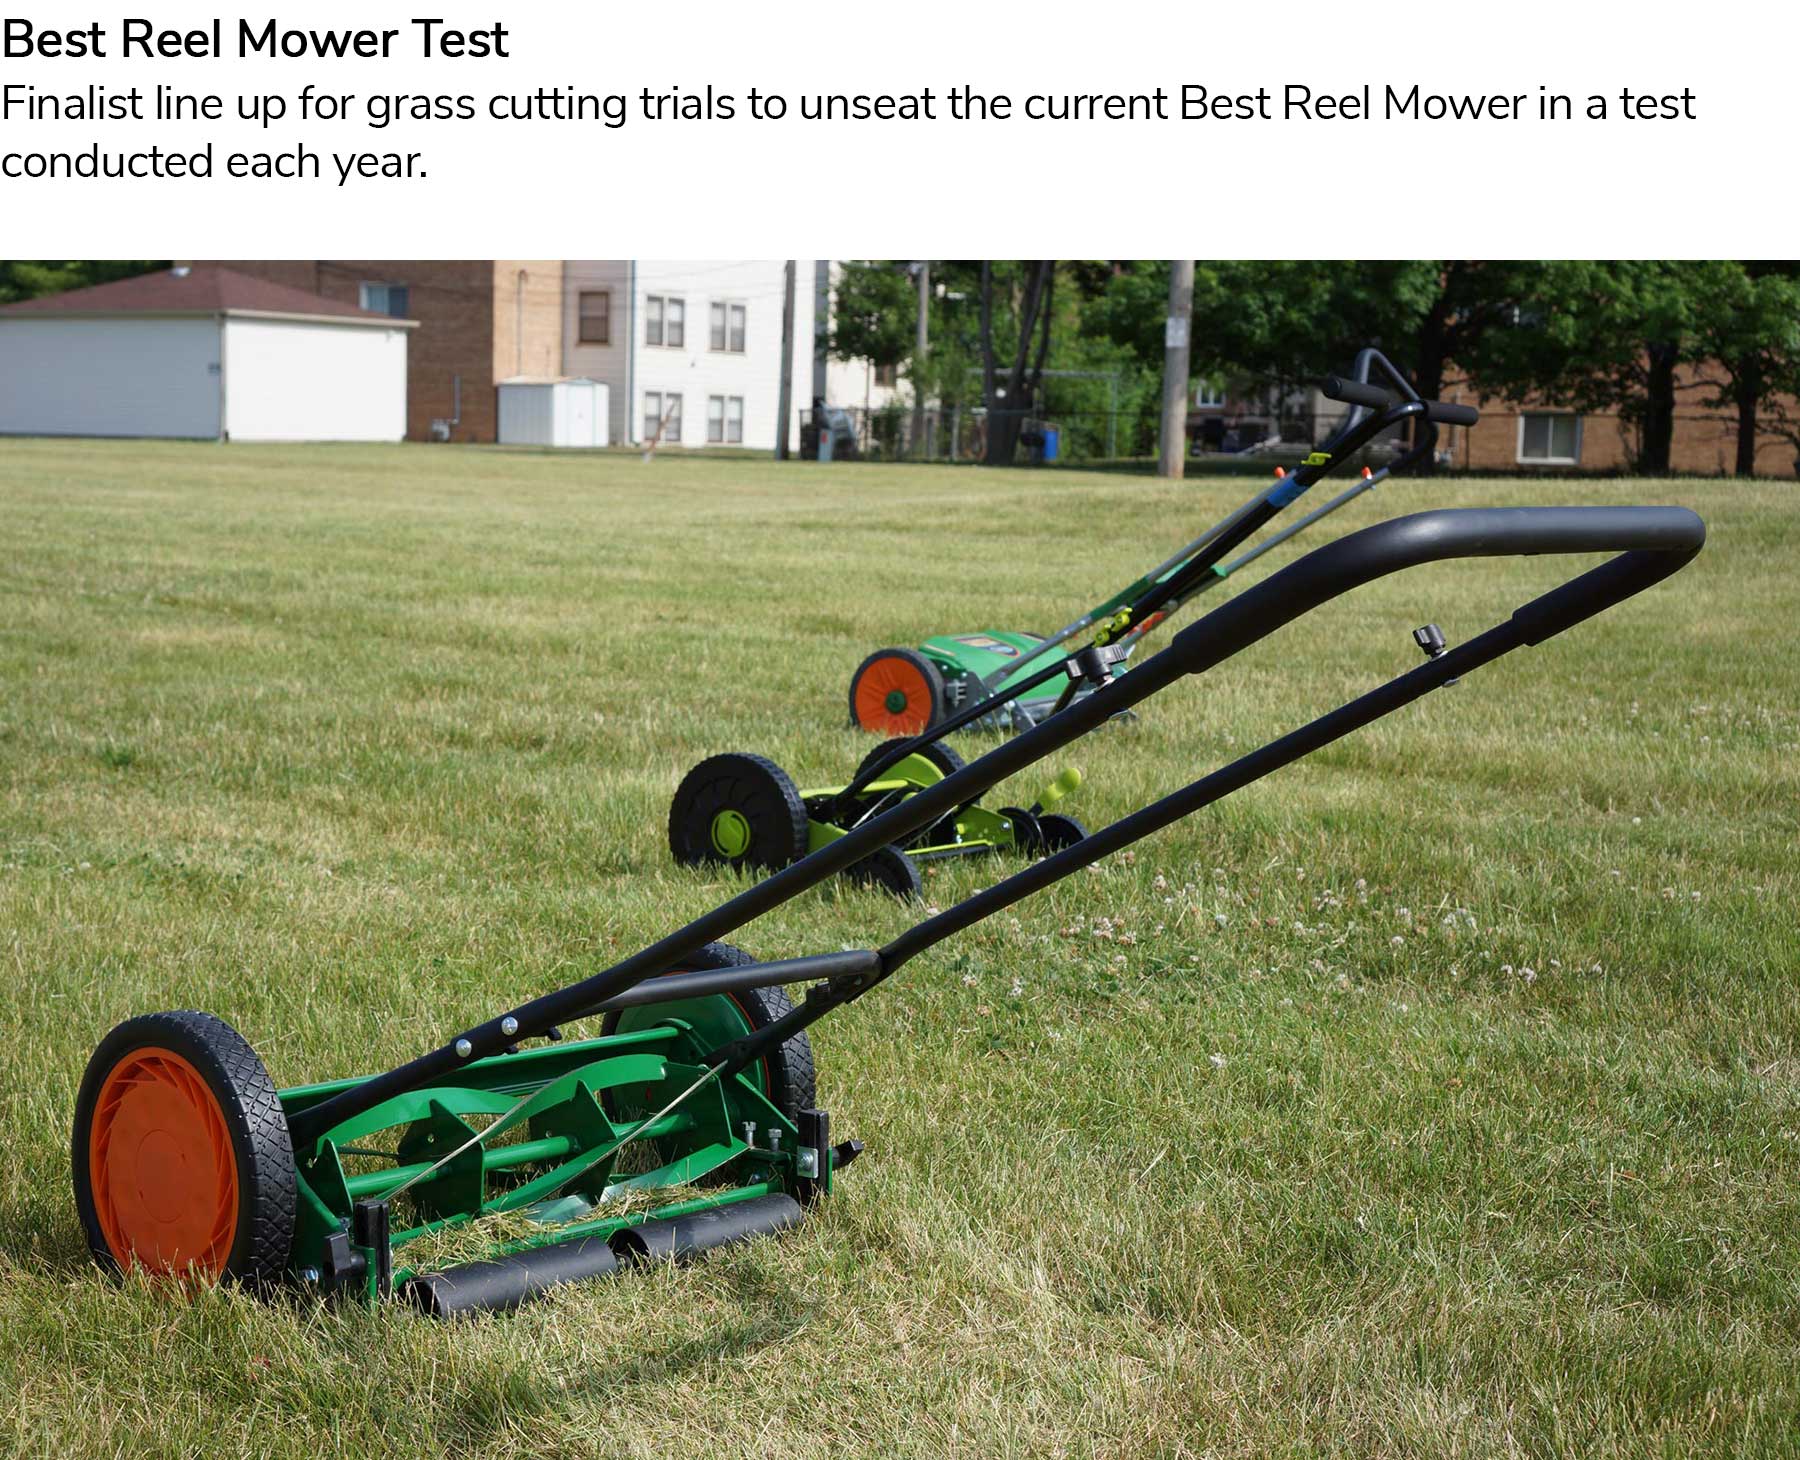 Best Reel Mower Test